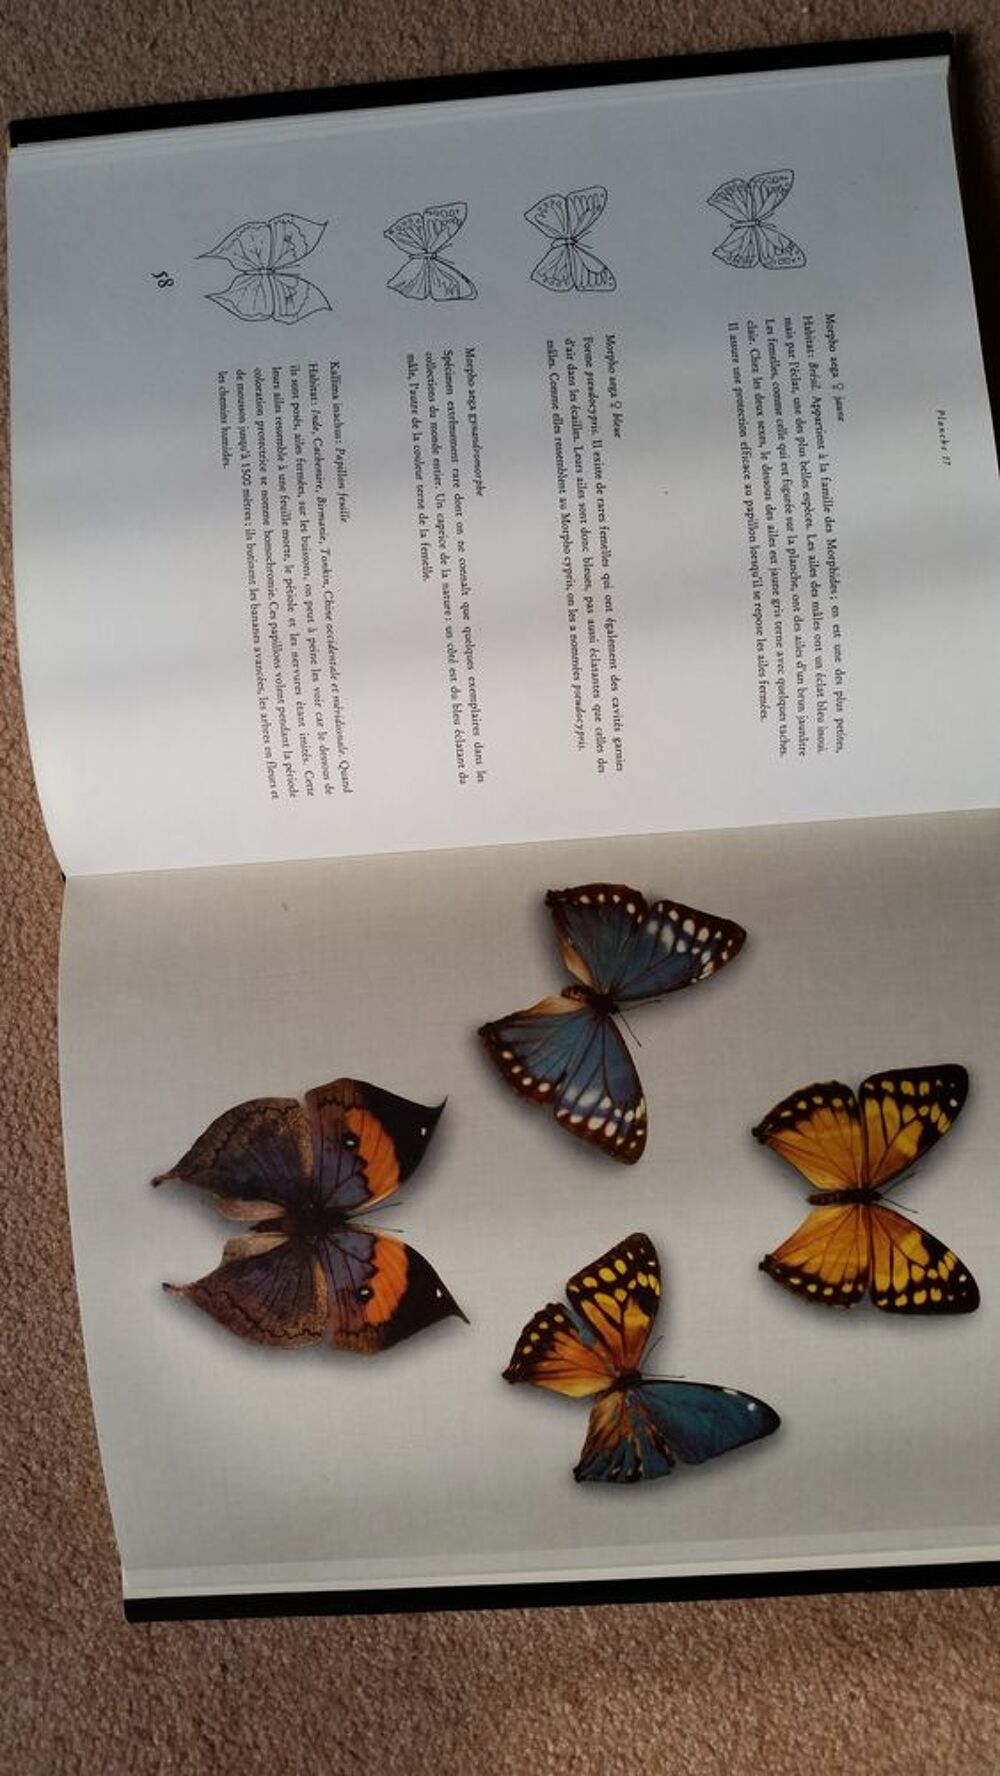 JOYAUX AILES (atlas des papillons) Livres et BD